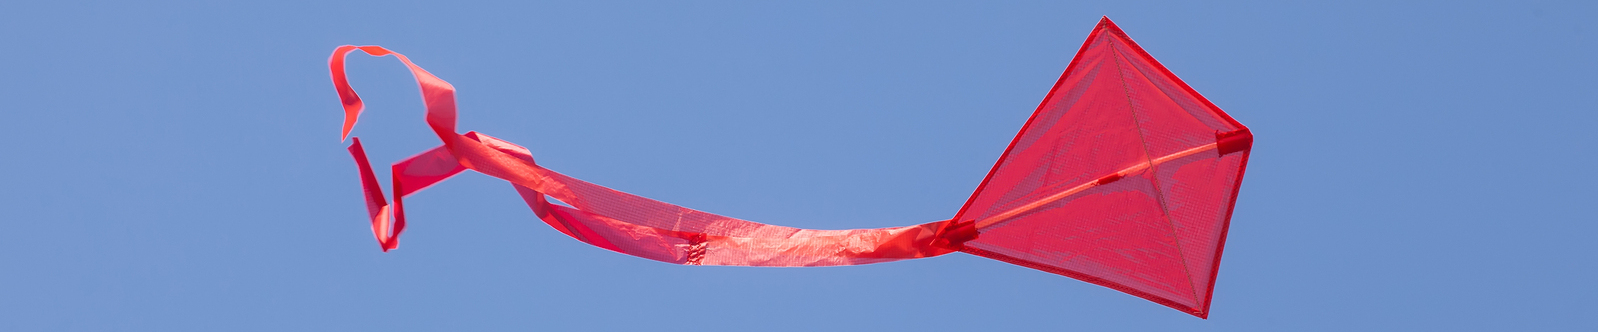 red kite flying in blue sky